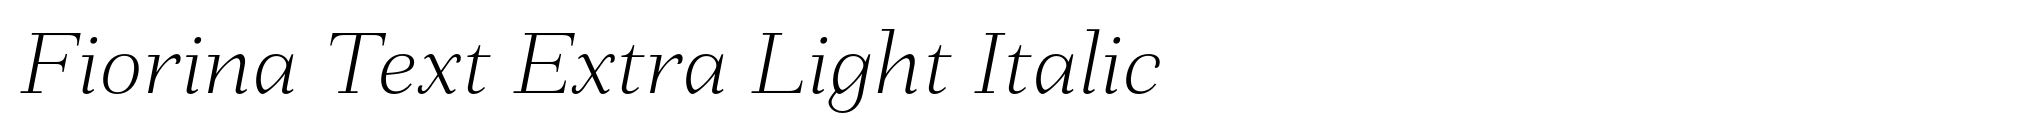 Fiorina Text Extra Light Italic image